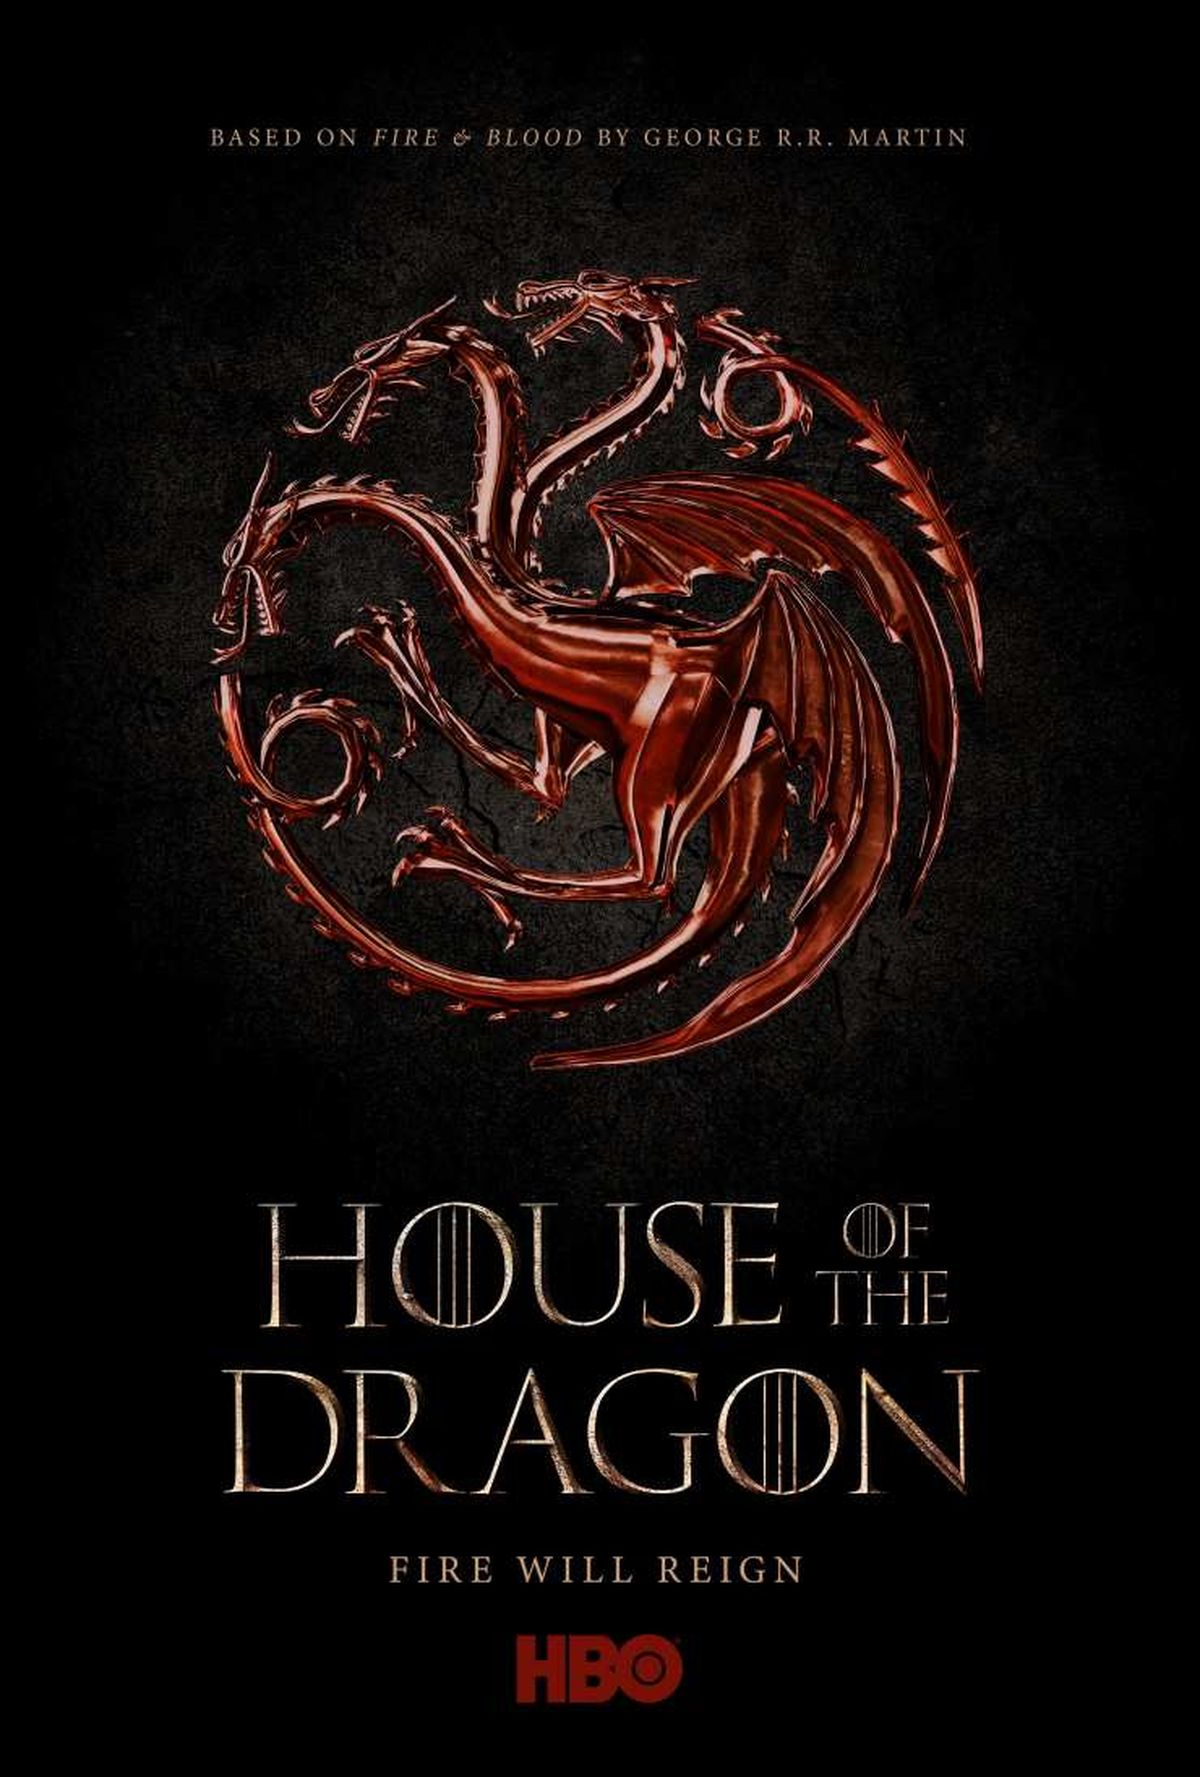 La casa del dragón - Temporada 2: Fecha de estreno, historia, reparto y más  de la serie de Juego de Tronos